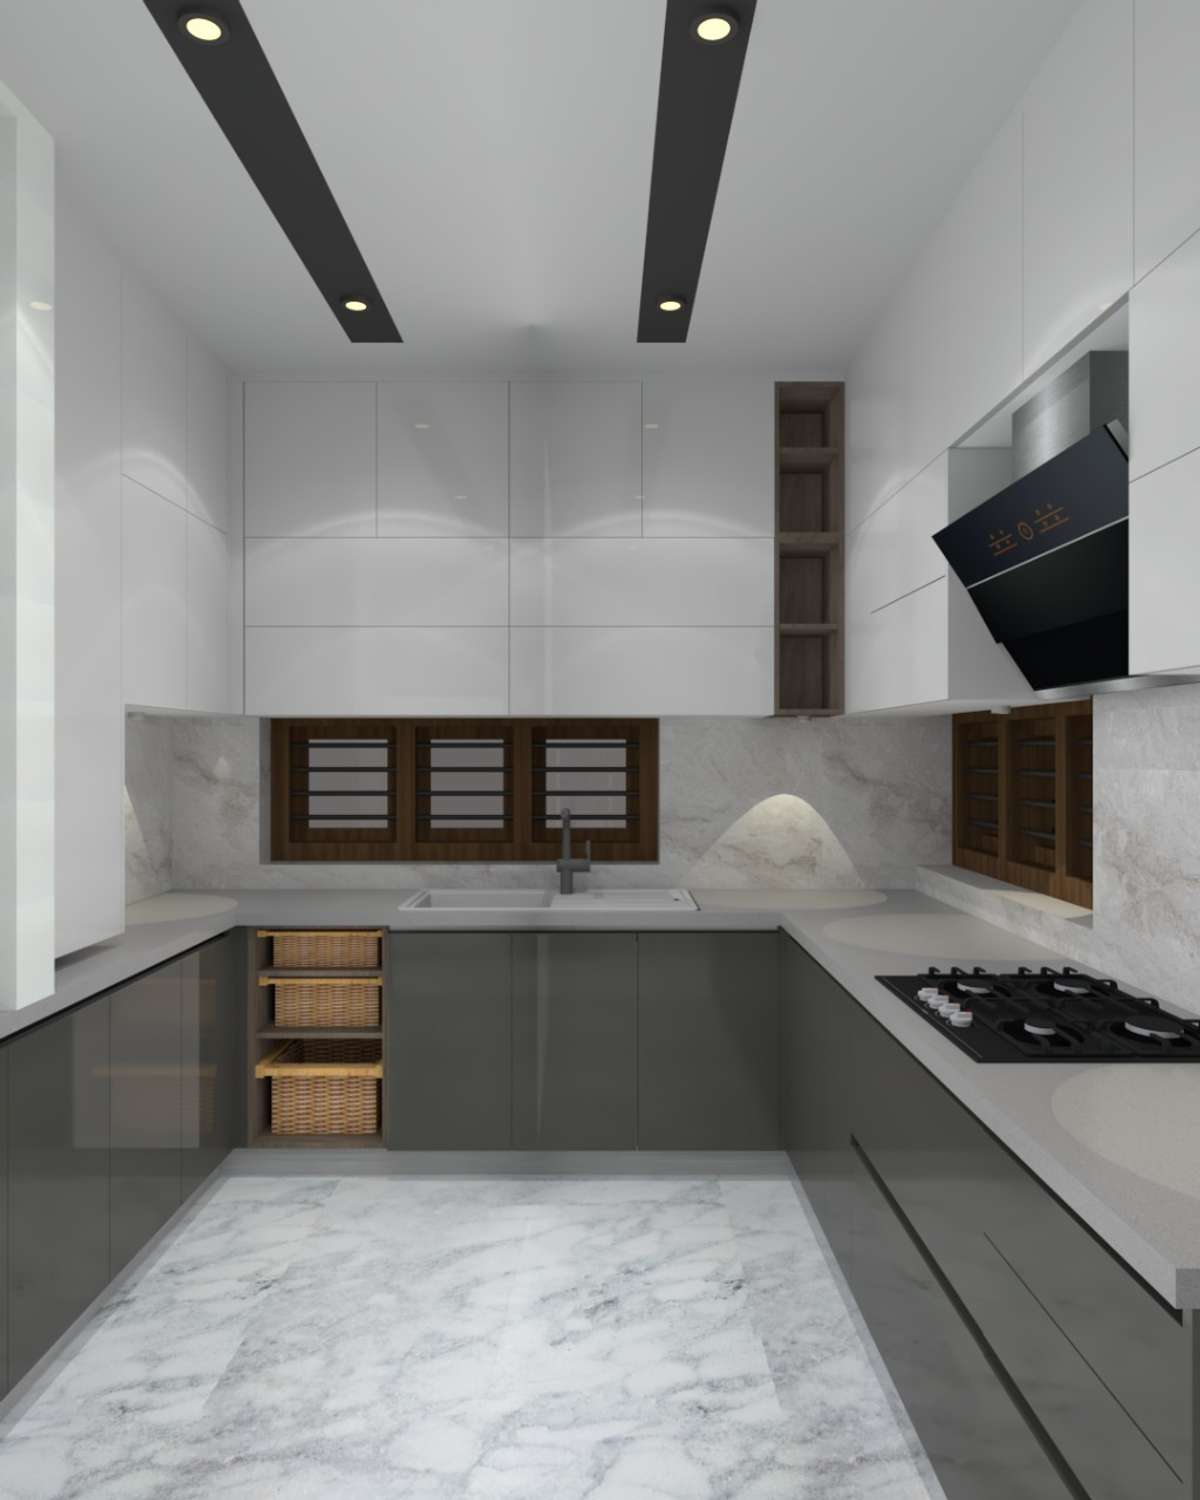 Kitchen, Storage, Lighting Designs by Interior Designer shameem km, Malappuram | Kolo